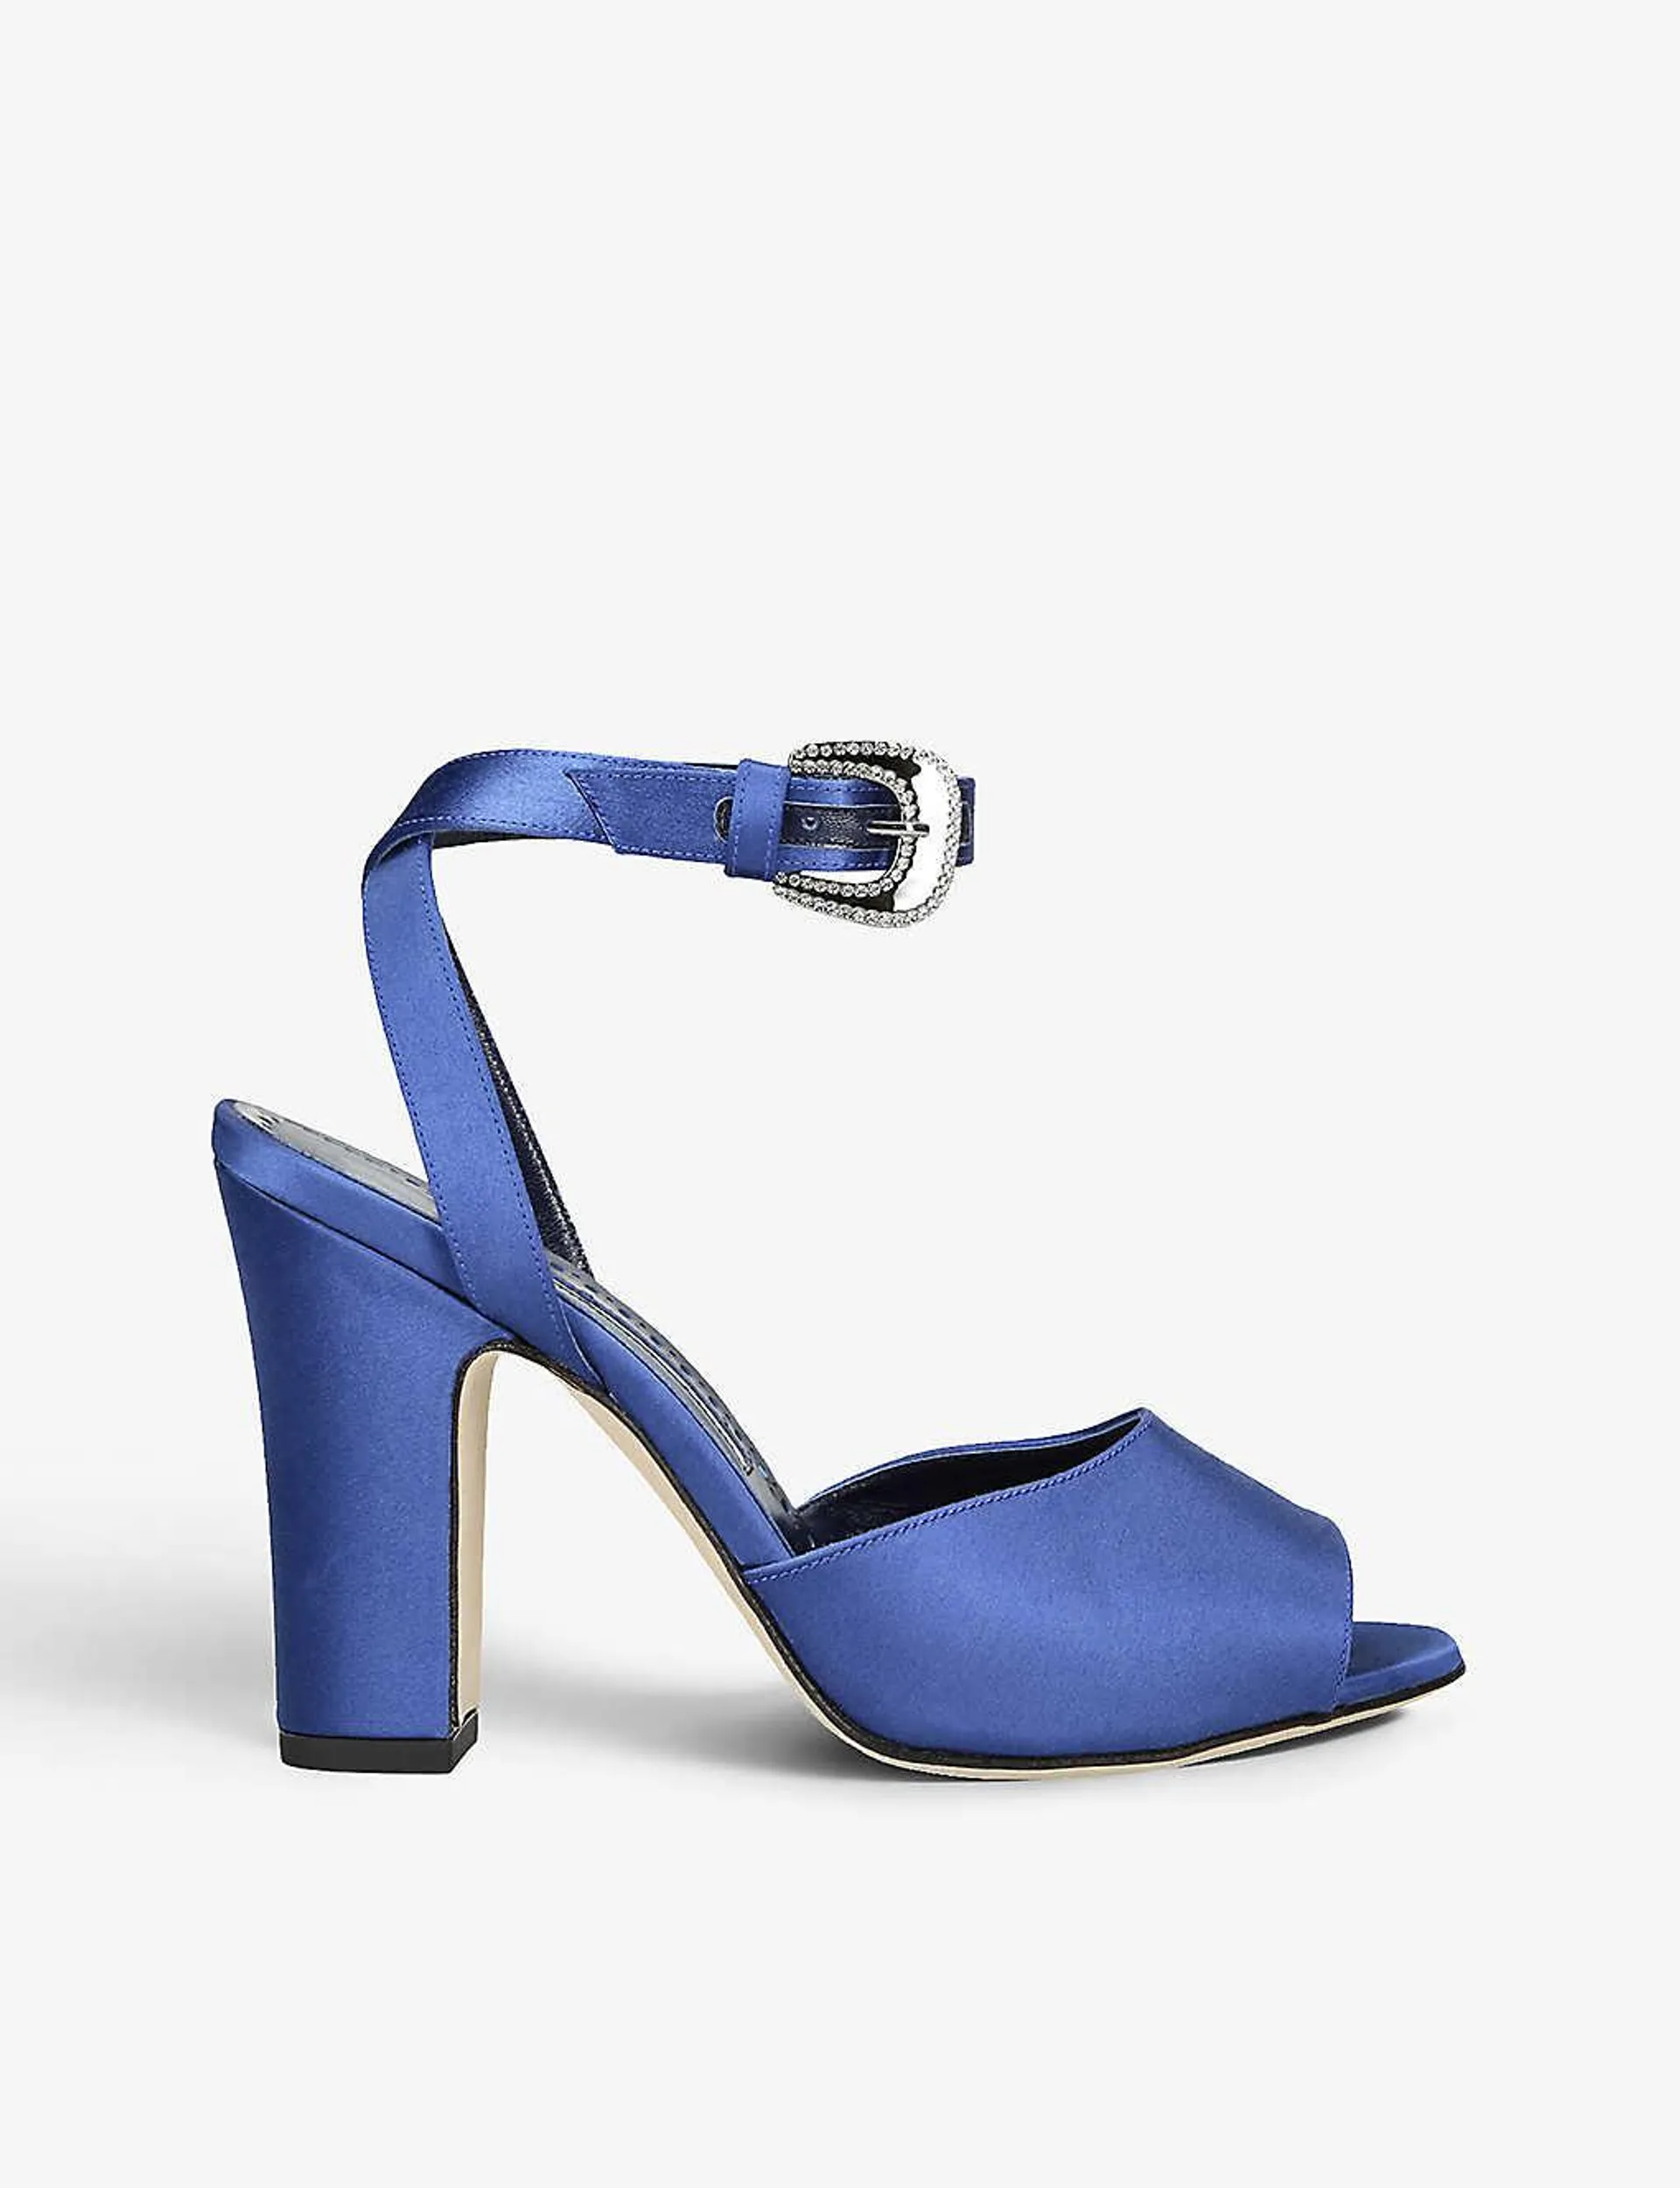 Elhobita 105 rhinestone-embellished satin heeled sandals